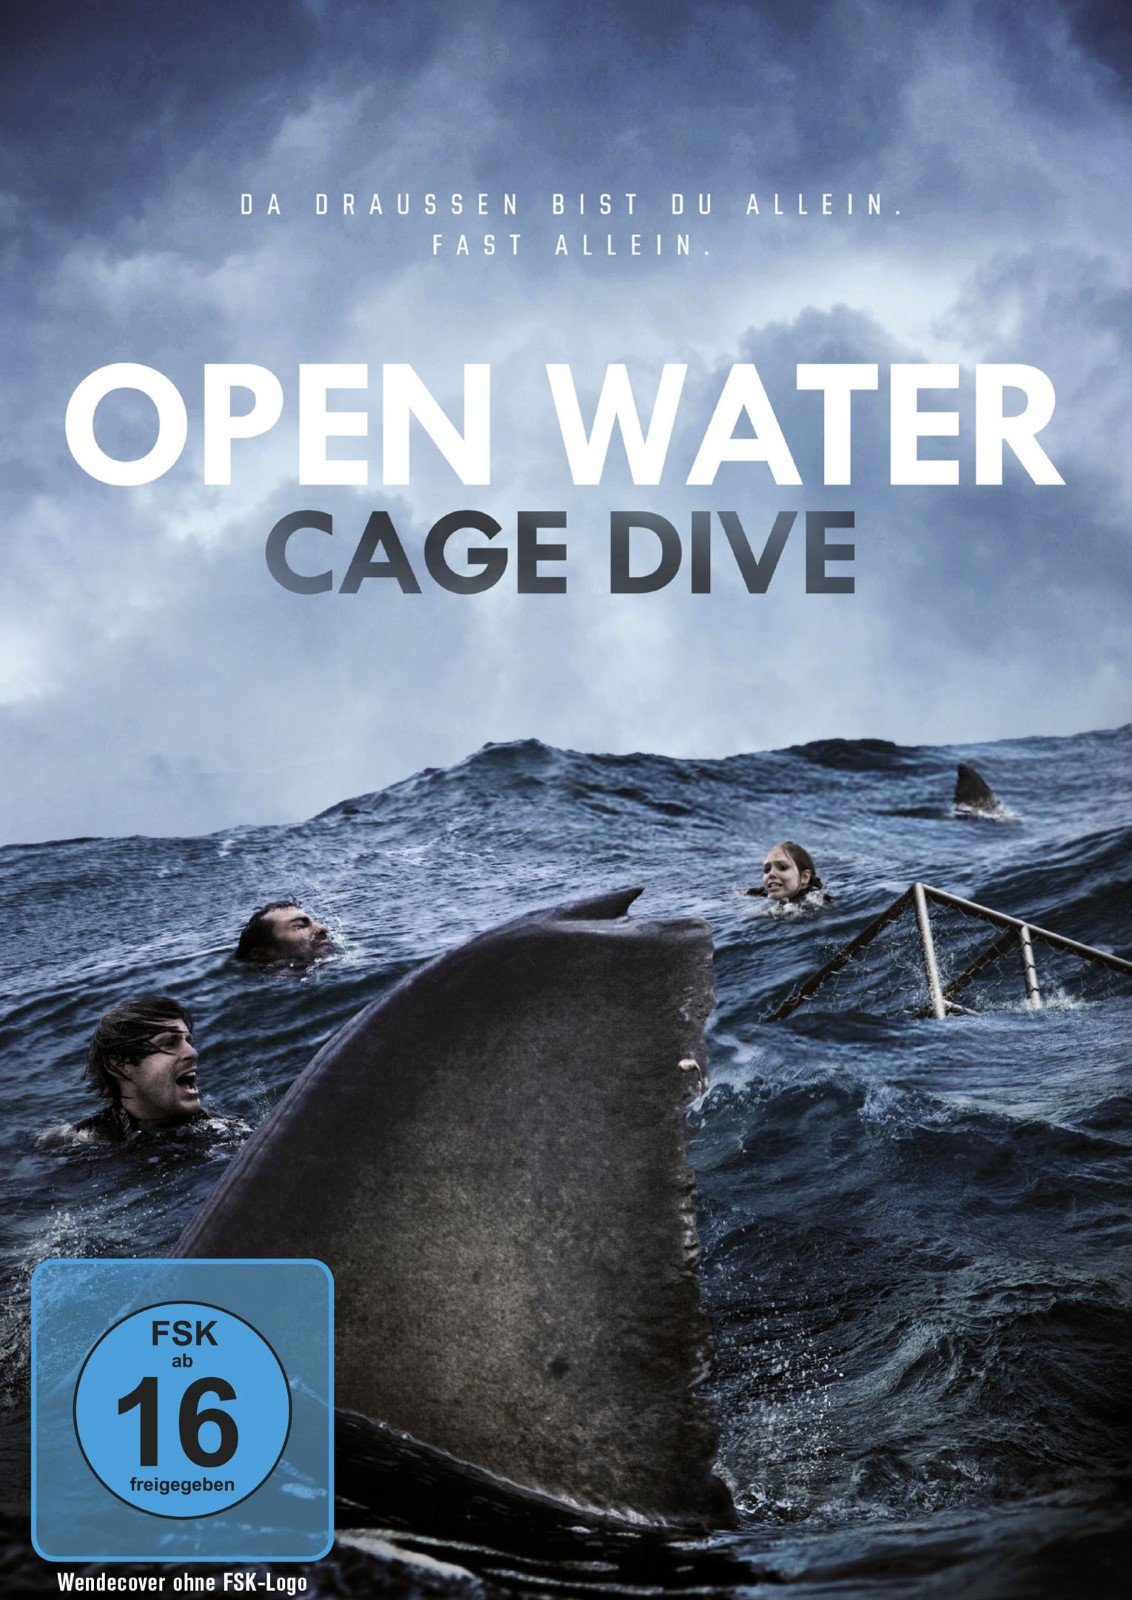 Над глубиной. Над глубиной хроники выживания. Над глубиной фильм. Над глубиной хроника выживания фильм 2017 Постер. Open Water 3 Cage Dive.